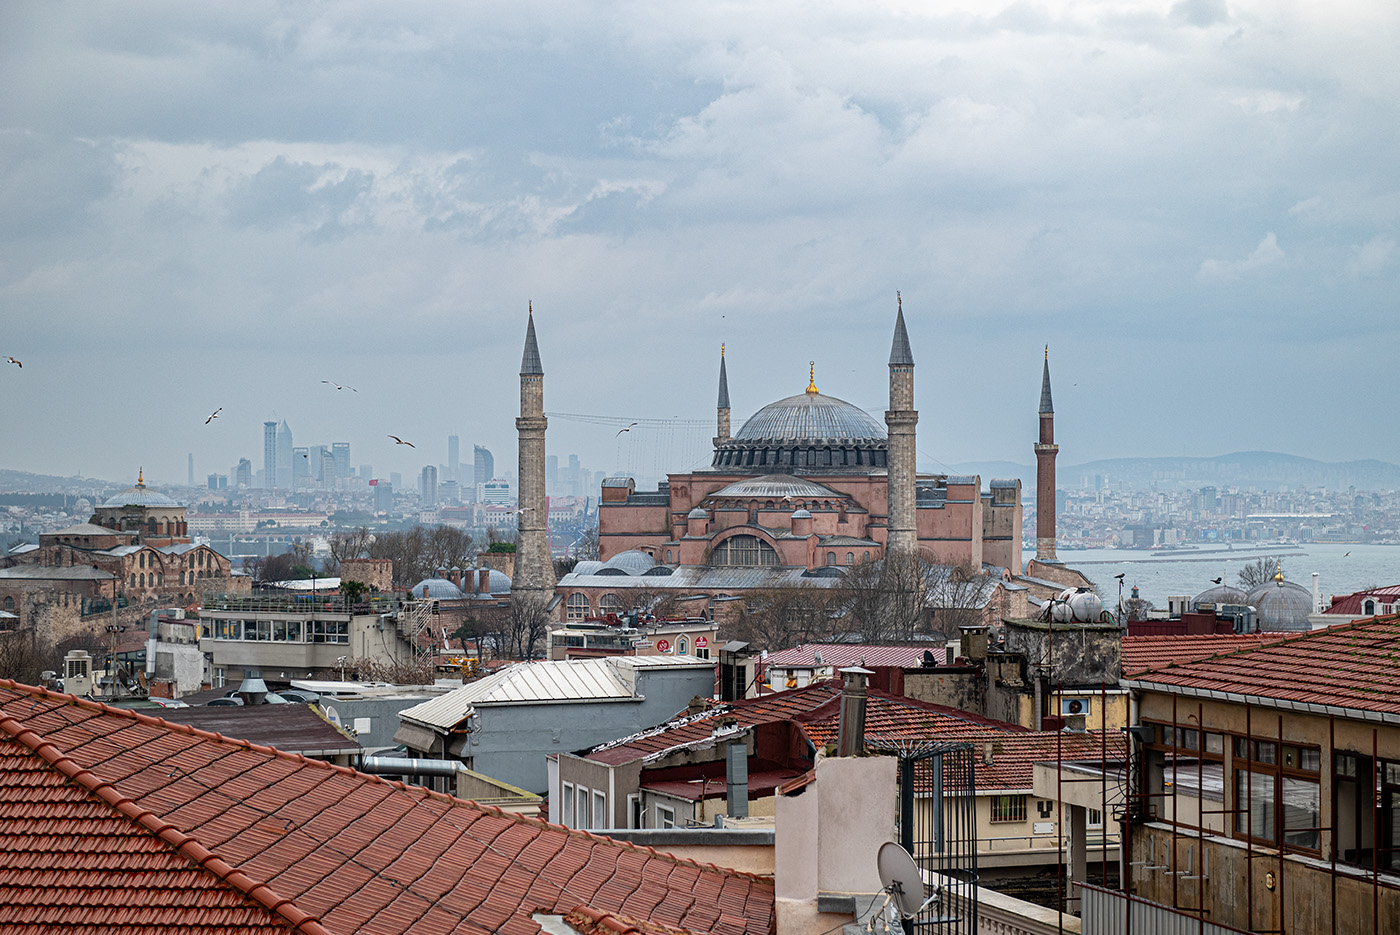 Hagia Sophia from a rooftop many blocks away